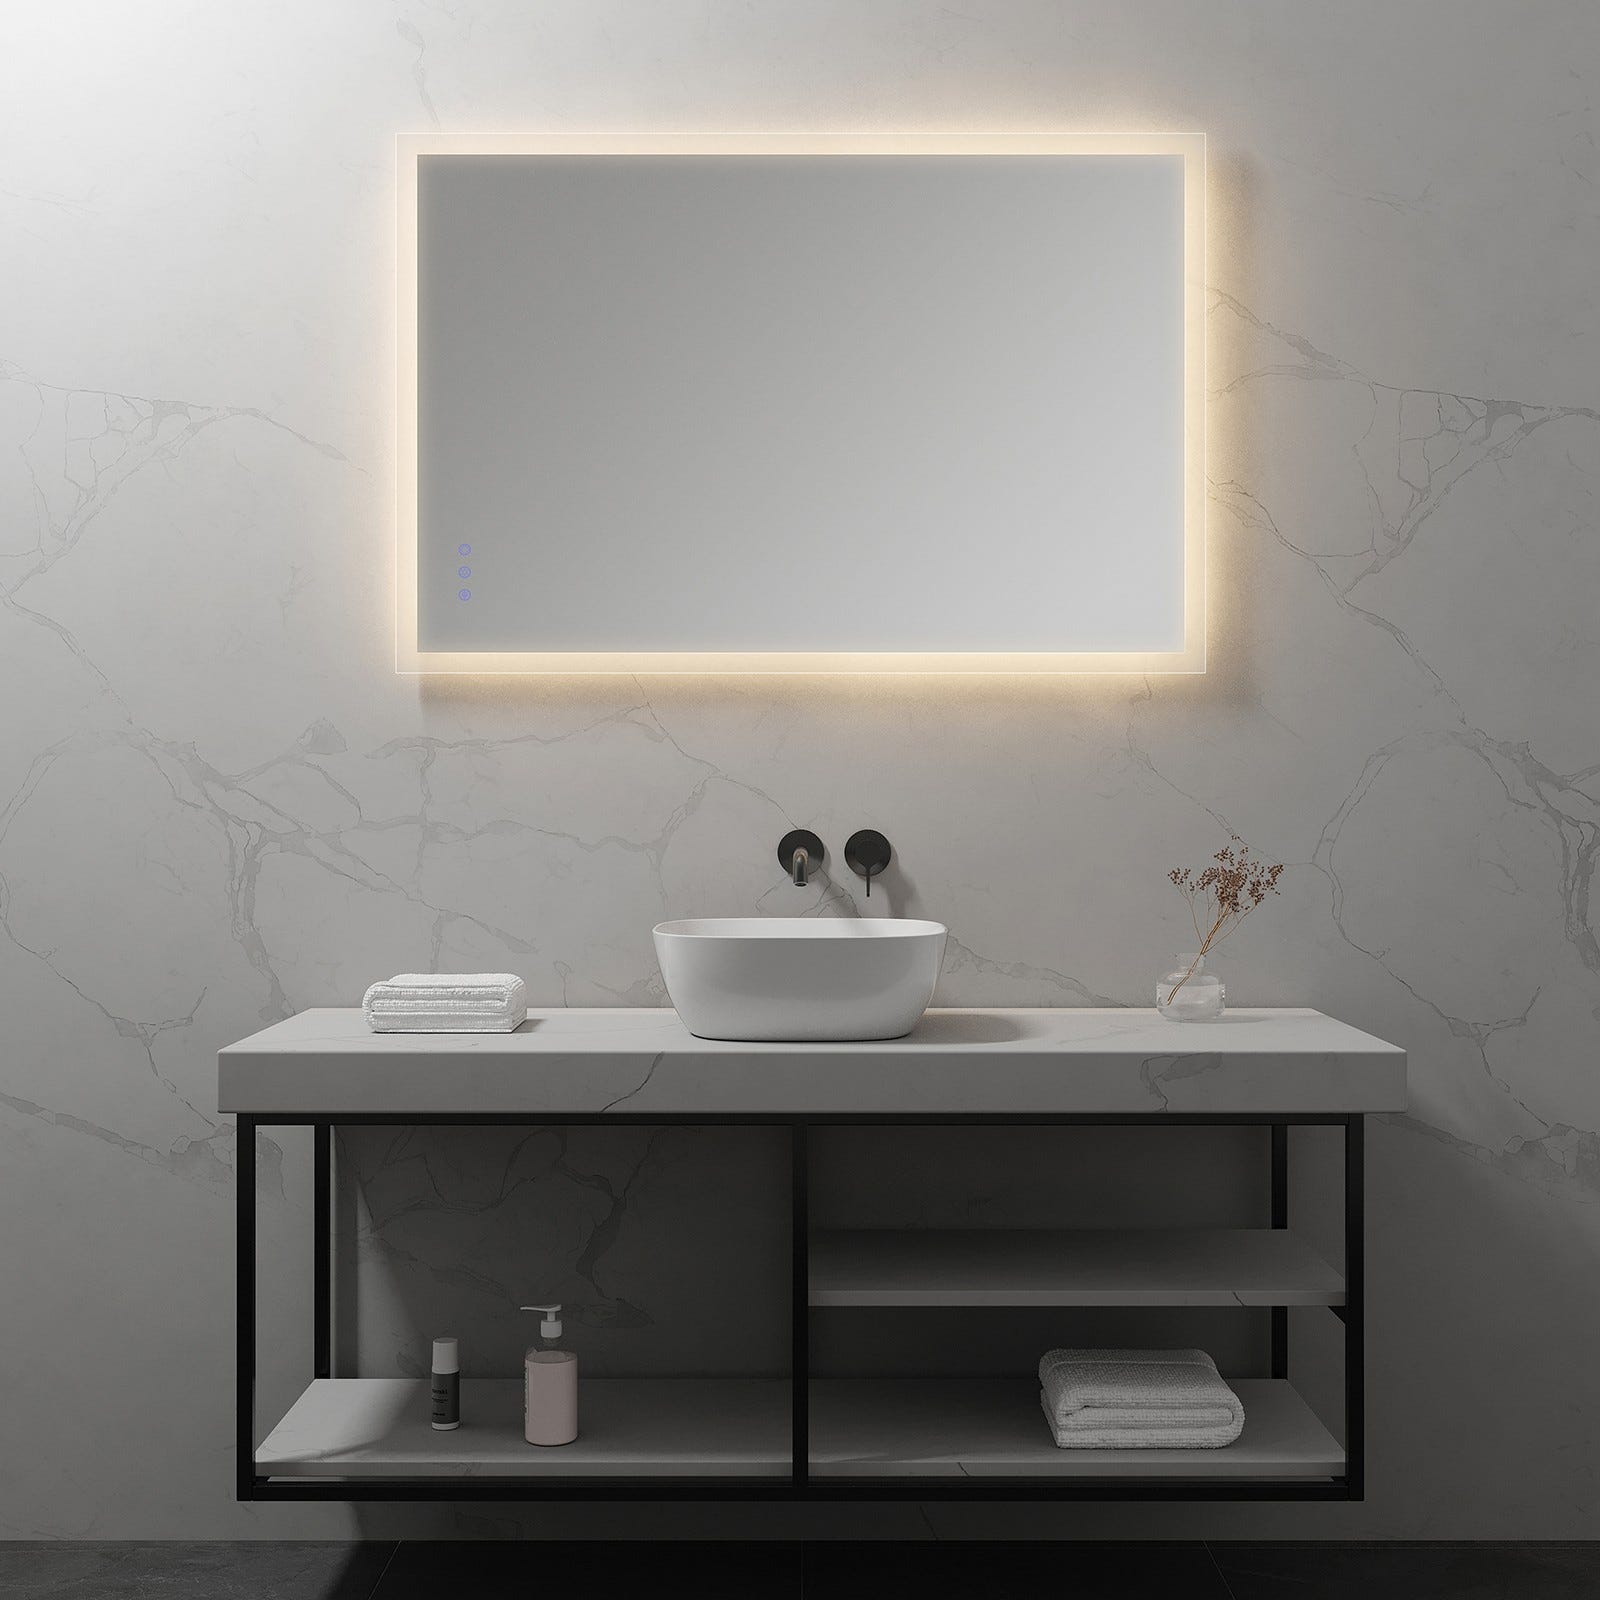 FRAME Miroir lumineux salle de bain LED 3 couleurs + intensité réglable & fonction anti-buée 80 x 120 cm 5